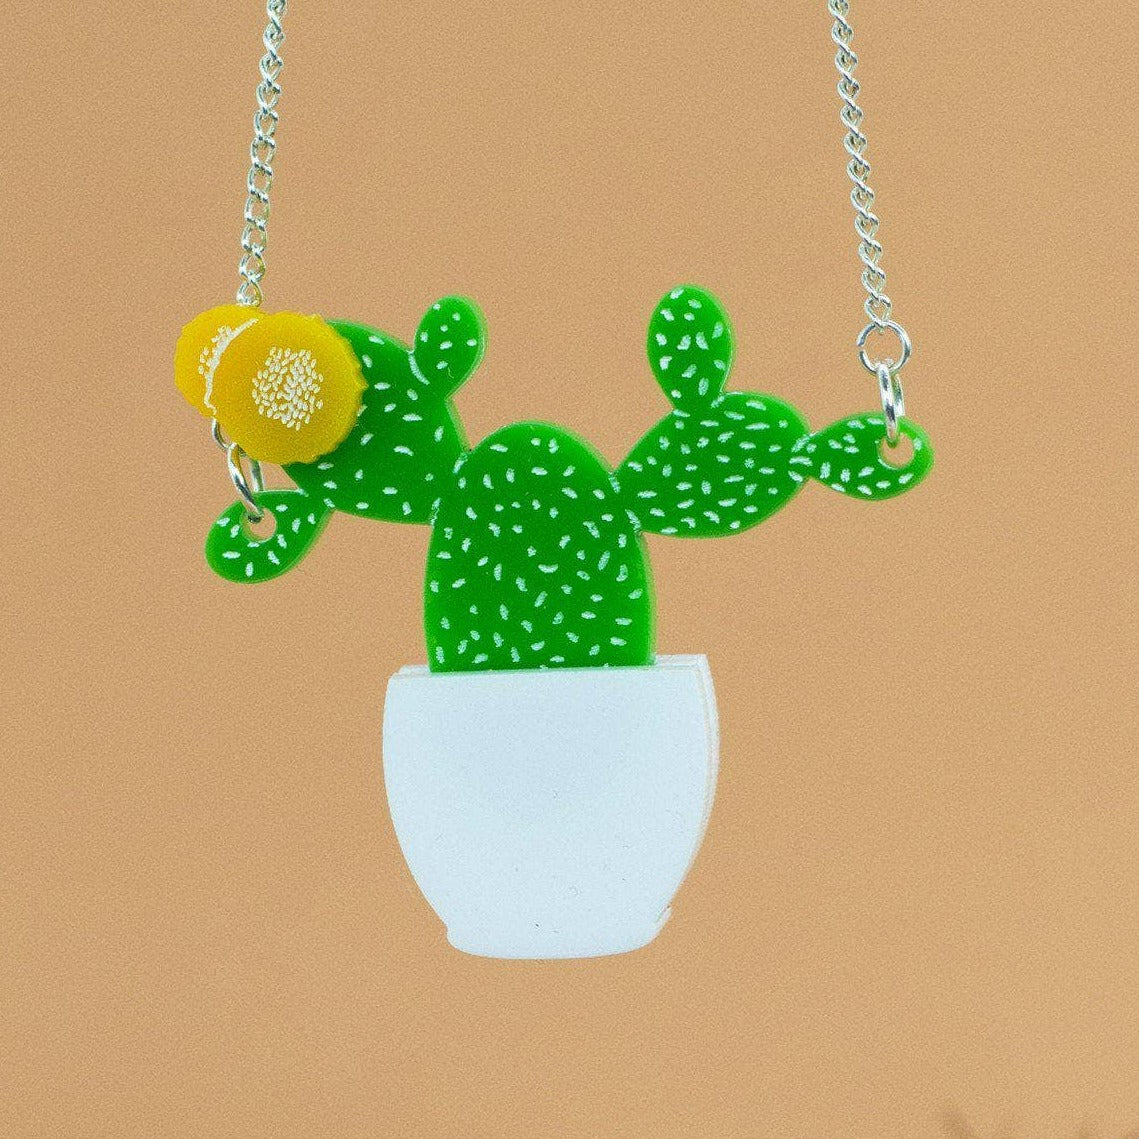 Prickly Pear Cactus Necklace